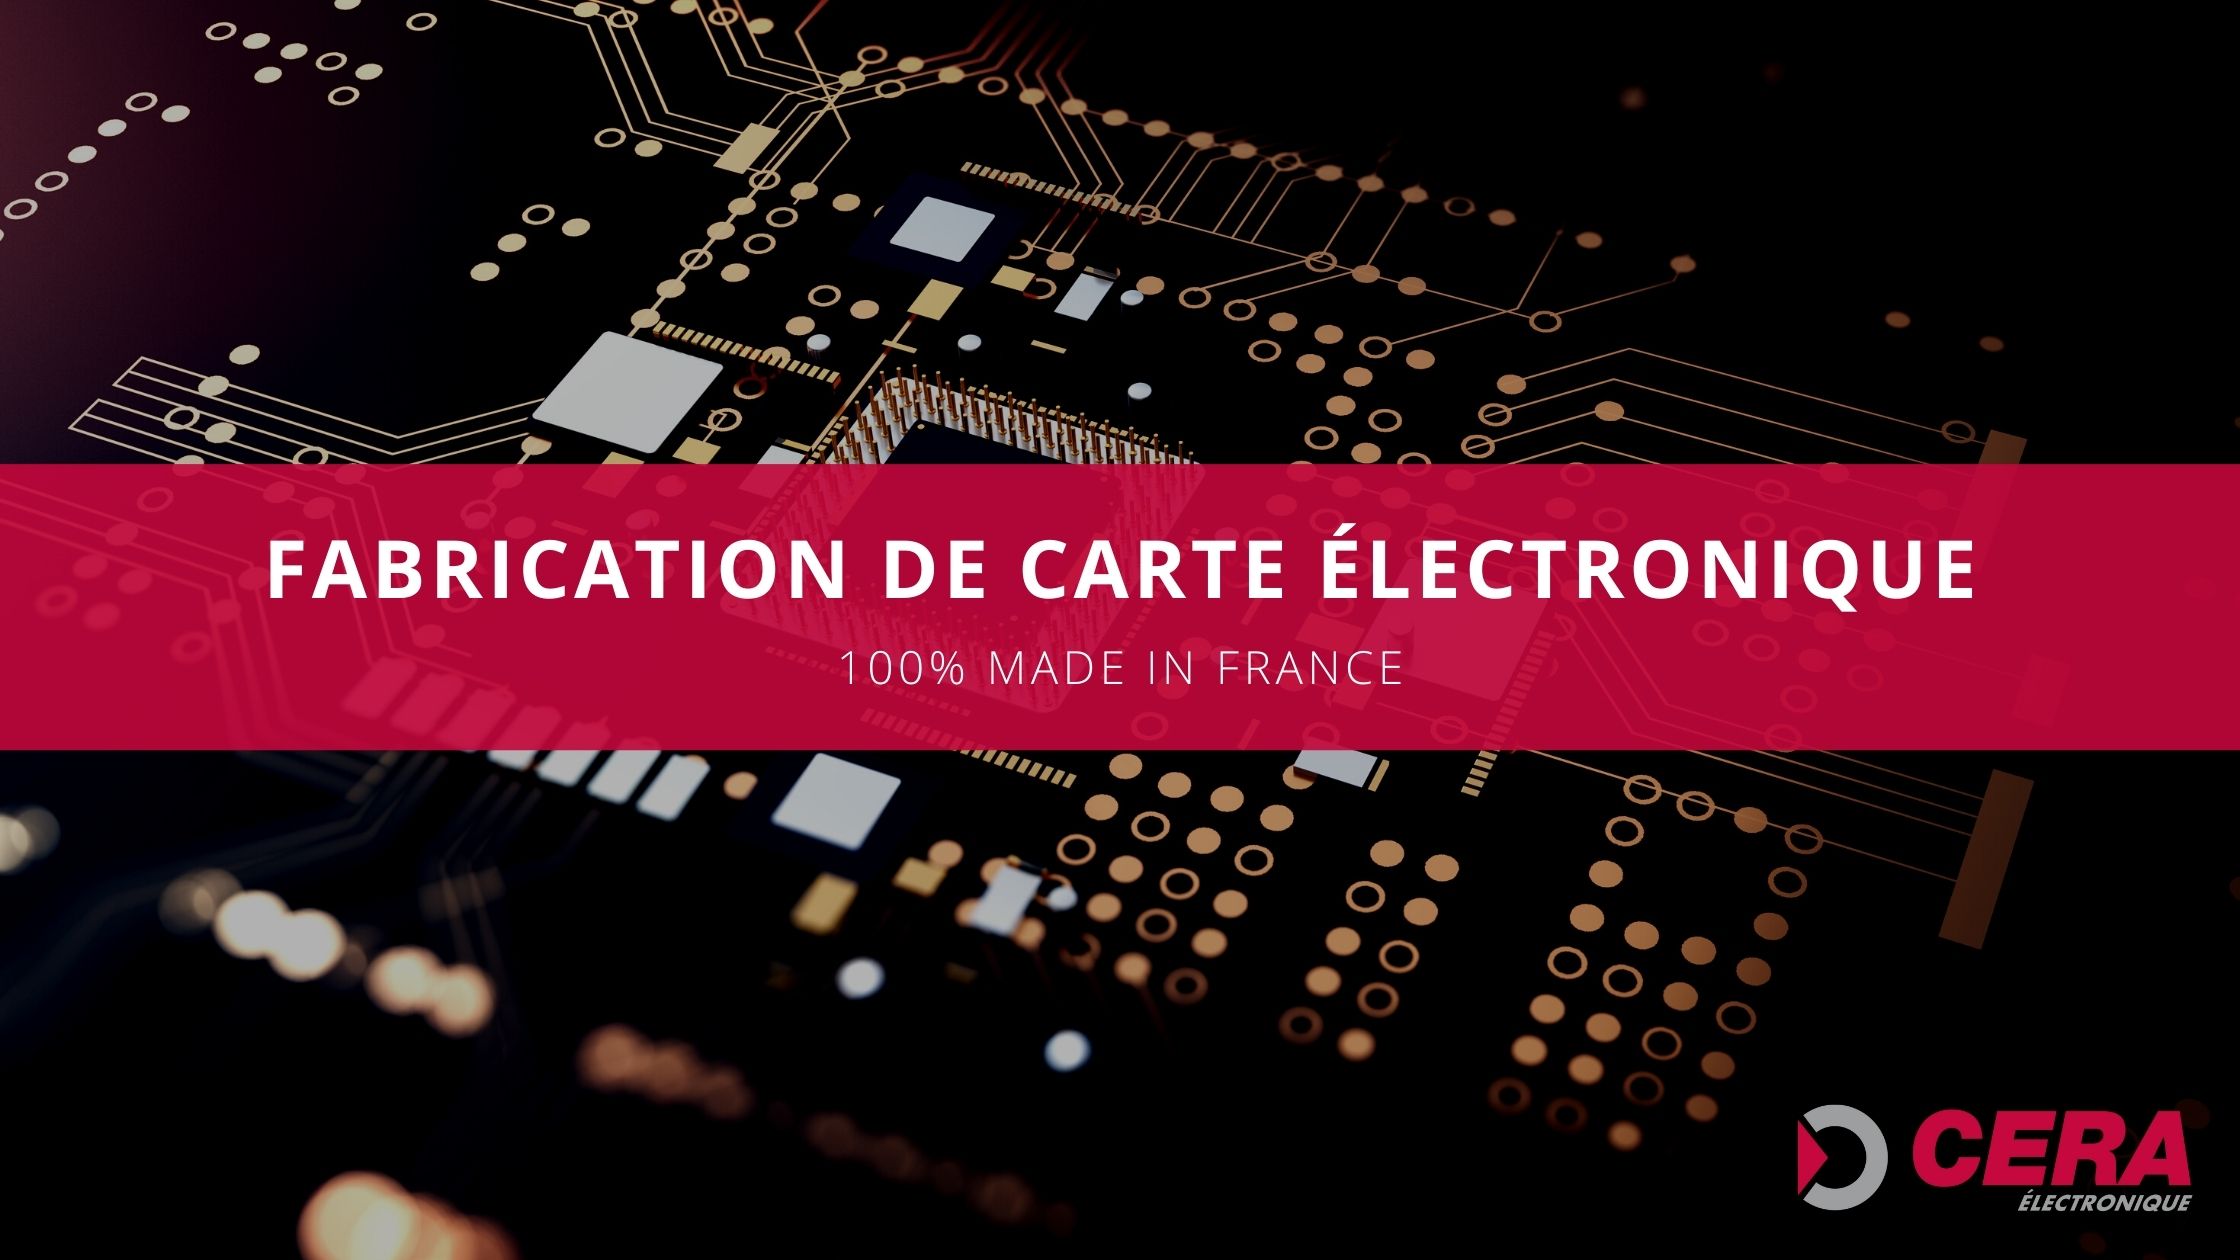 Chez Cera électronique, nous sommes fiers d'être reconnus comme des experts dans la fabrication, la conception et l'assemblage de cartes électroniques pour divers secteurs industriels. Nous sommes basés en France et nous sommes une société spécialisée dans la fabrication de cartes électroniques de haute qualité.